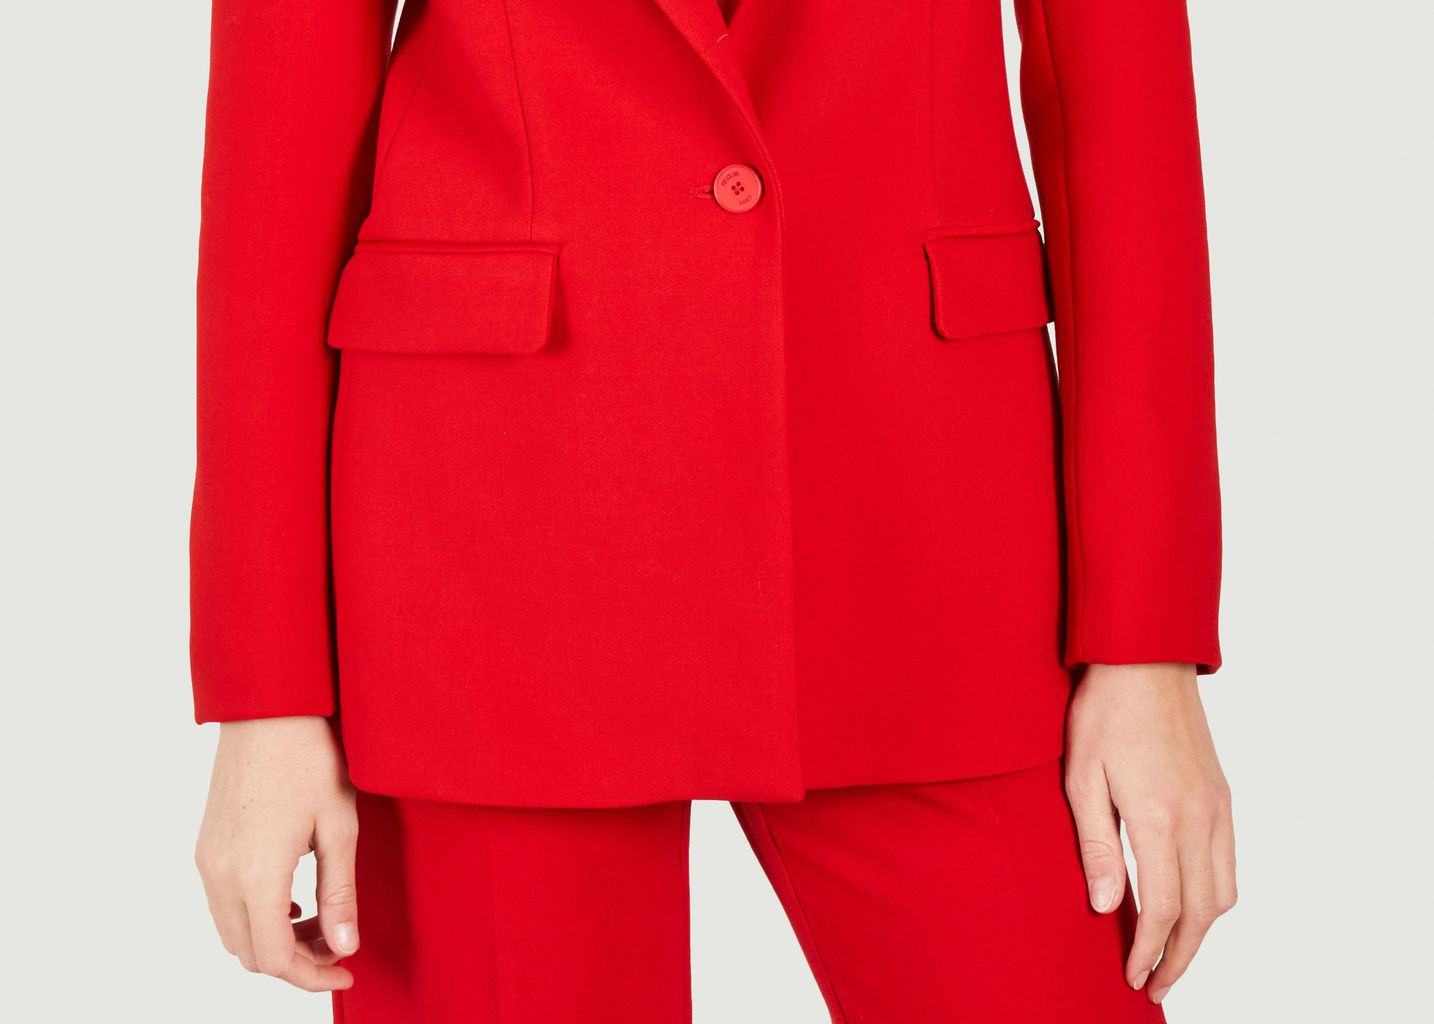 Valdena red suit jacket - Maje